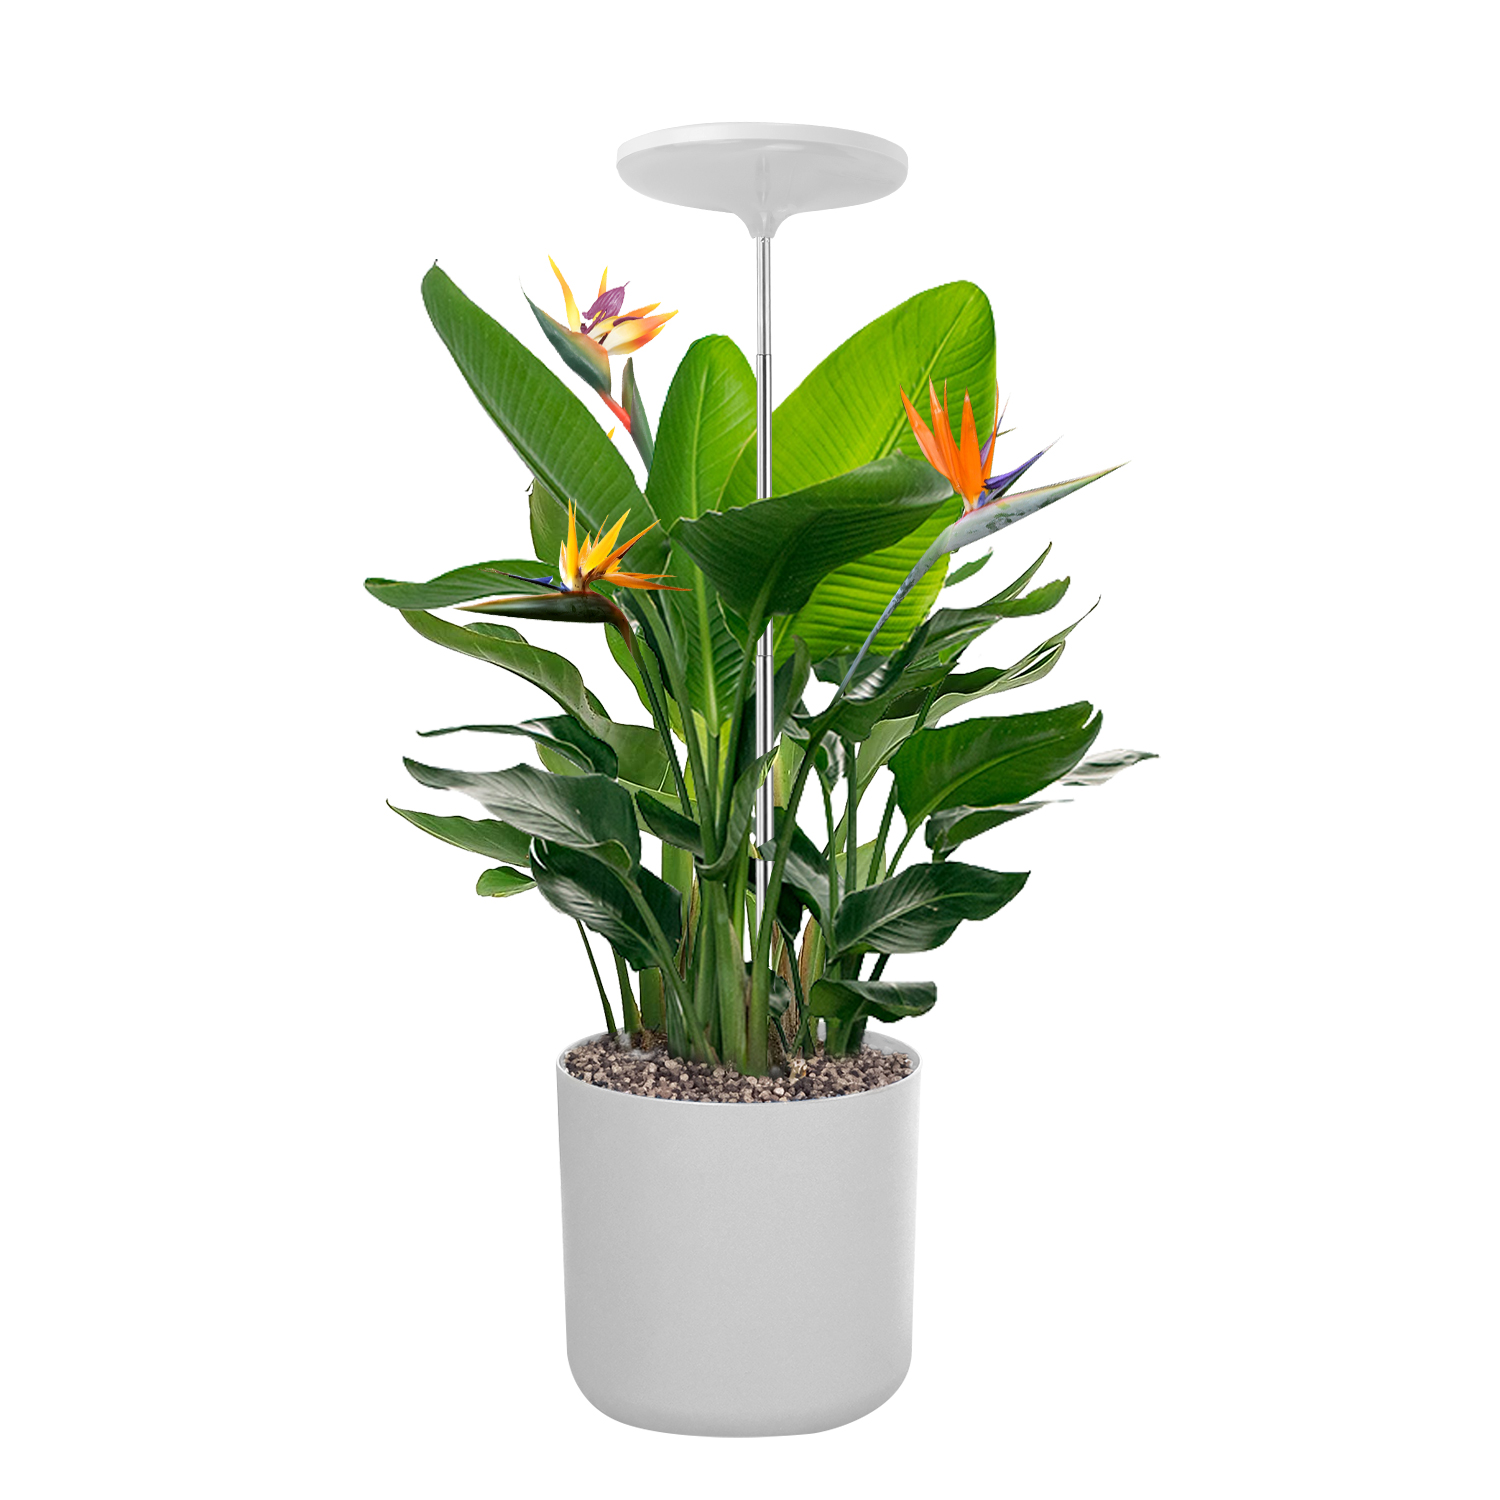 TG004 Indoor Smart Plant Grow Light Lampu Taman, Grow Lights, Lampu Hiasan Tumbuhan